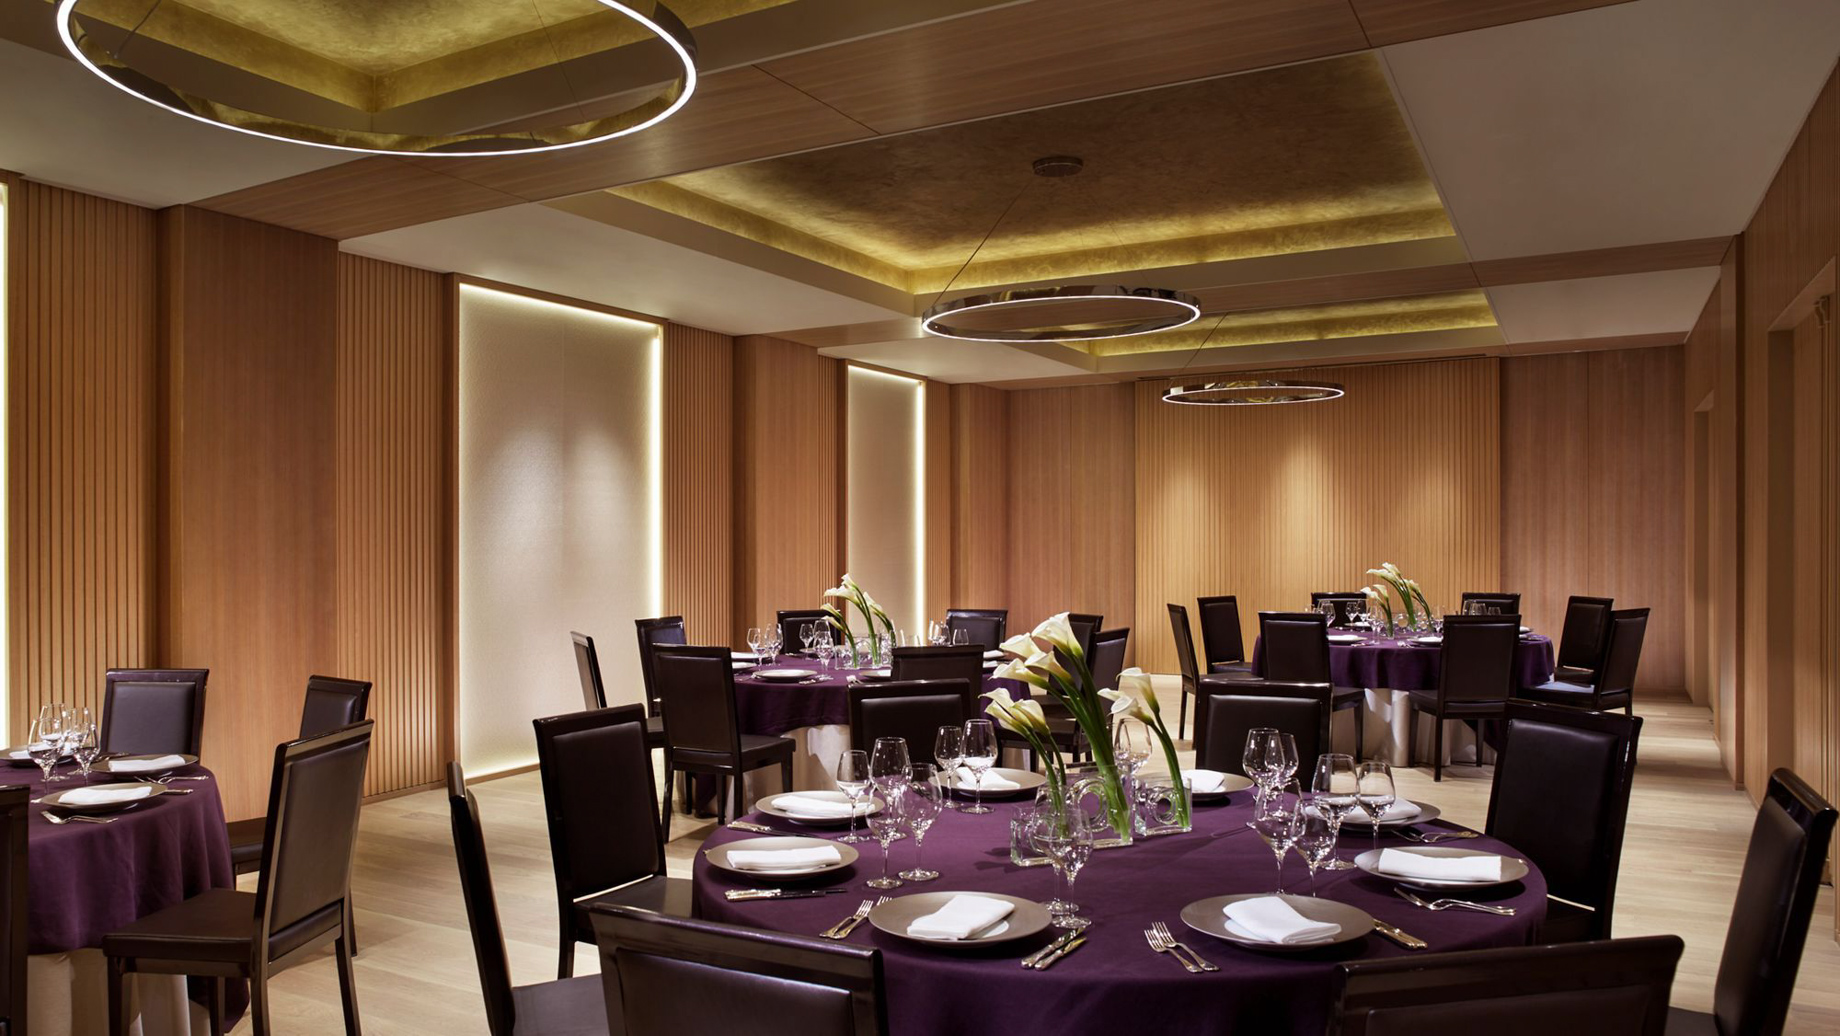 The Ritz-Carlton, Kyoto Hotel – Nakagyo Ward, Kyoto, Japan – Banquet Room